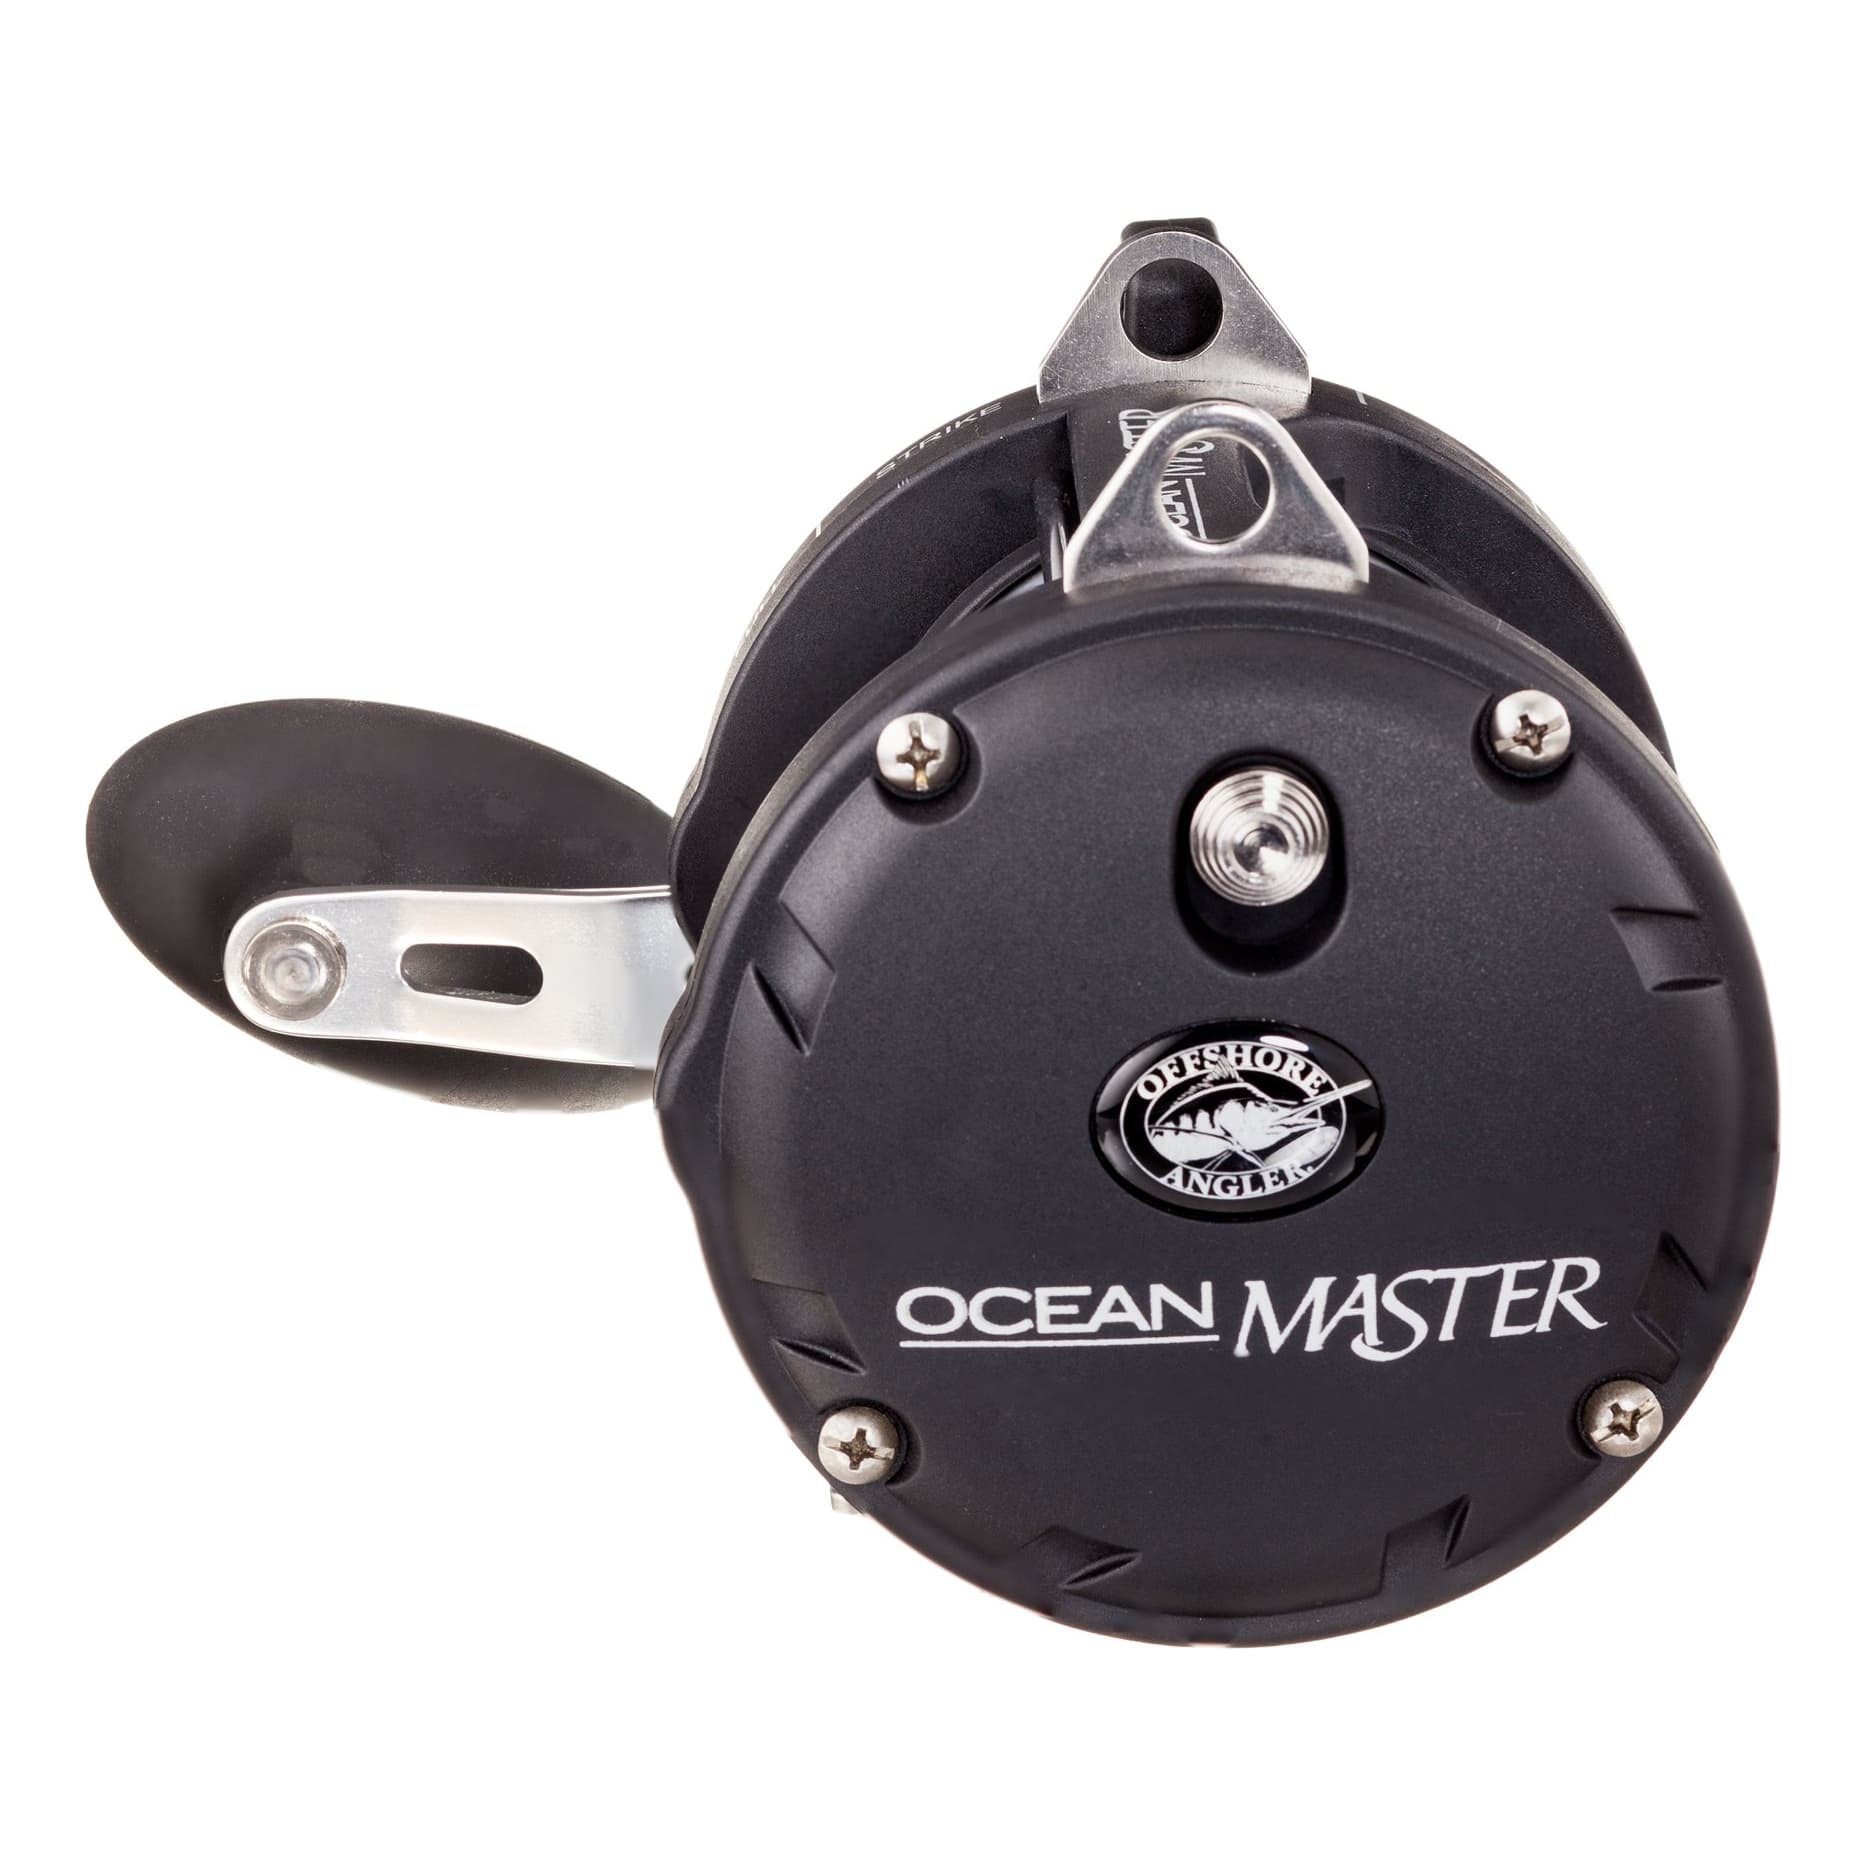 Offshore Angler Ocean Master Lever Drag Reel